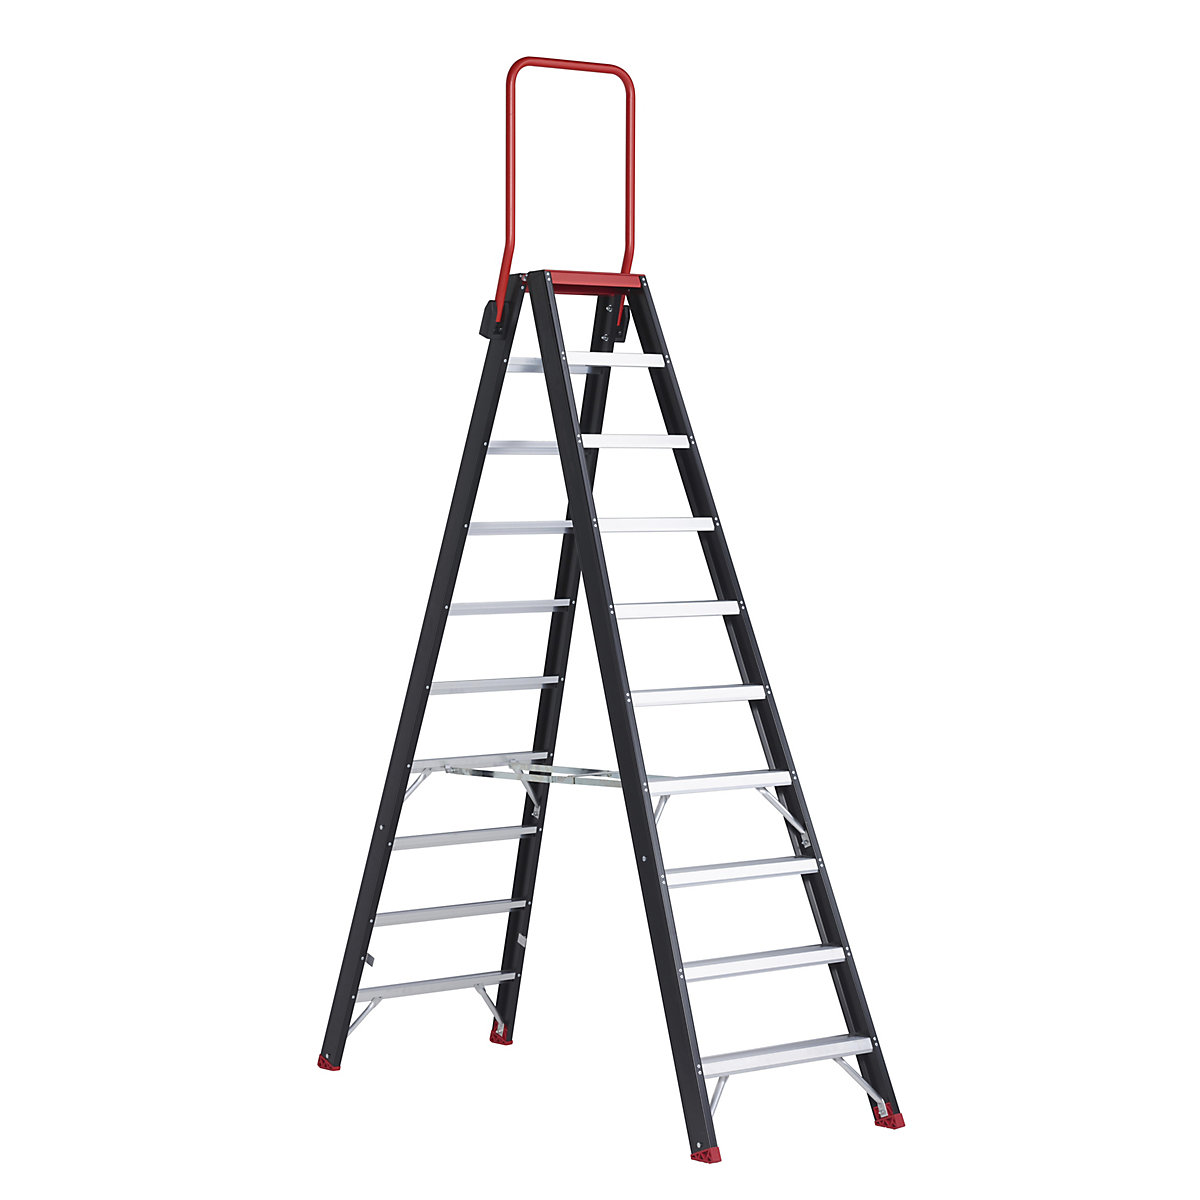 Altrex Sicherheits-Stehleiter, beidseitig begehbar, 2 x 10 Stufen